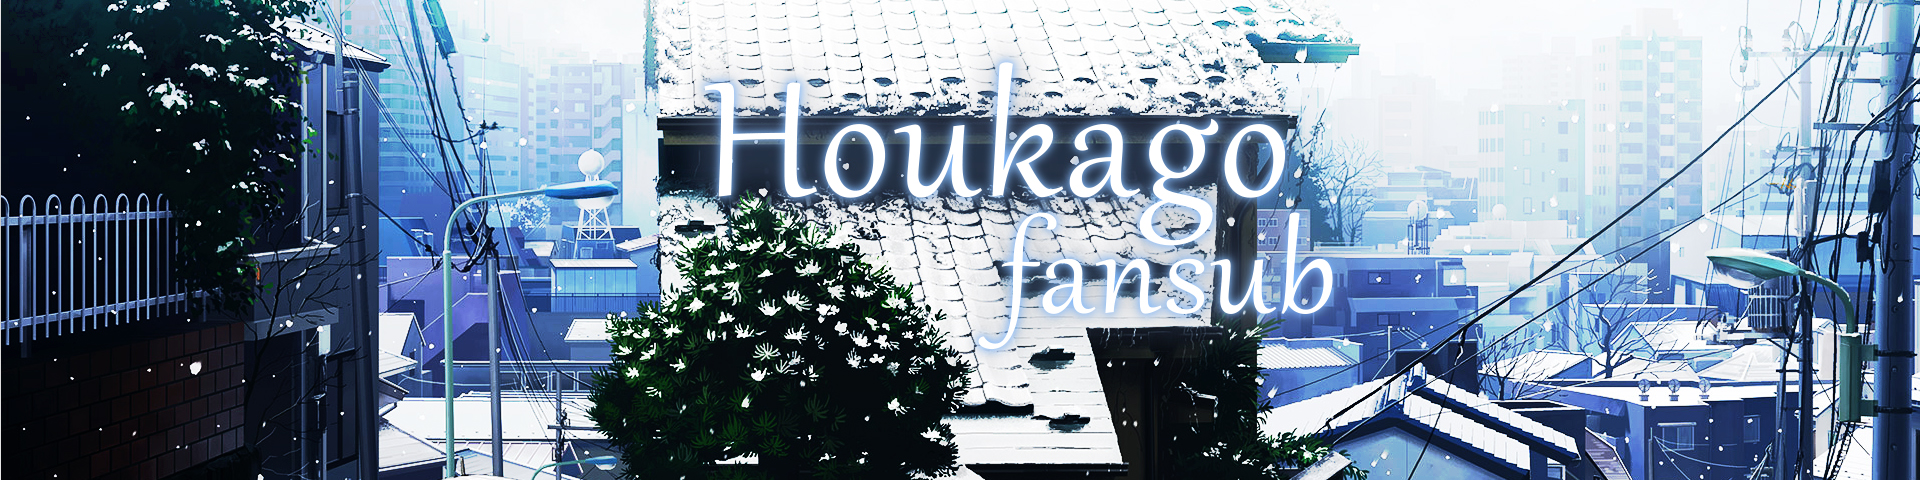 Houkago-Fansub